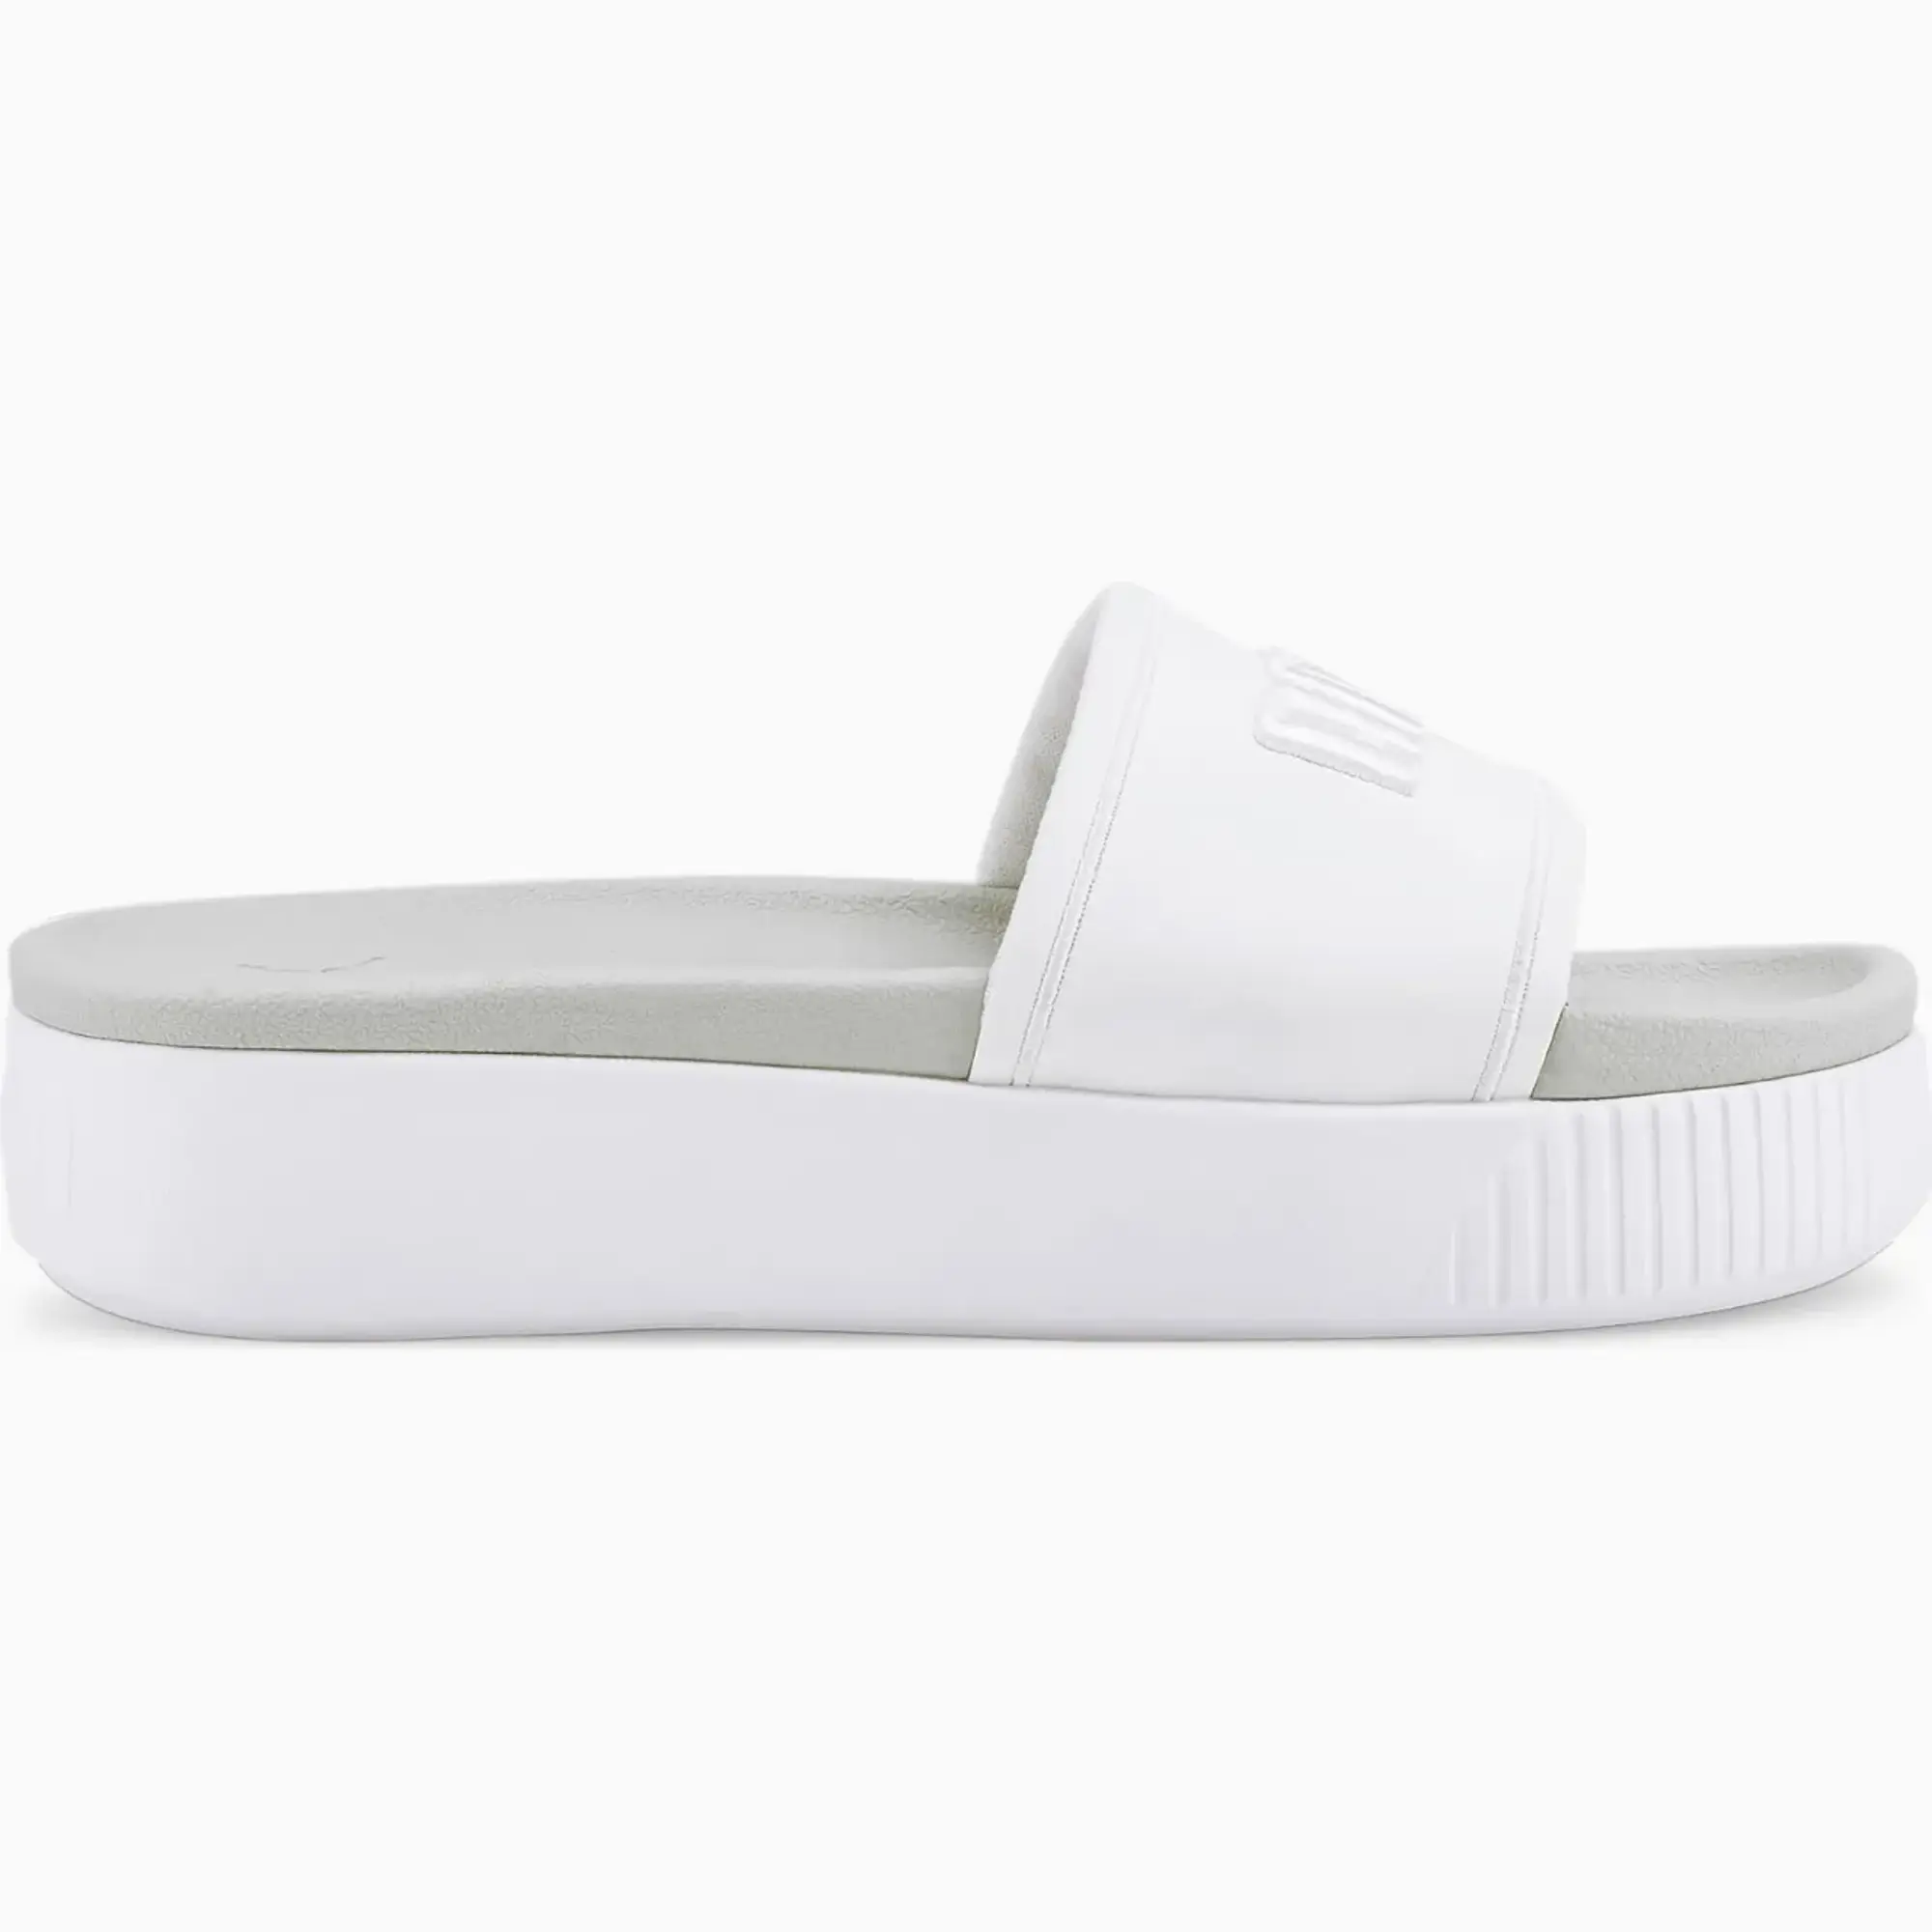 PUMA Women's Platform Sandals, White/Glacier Grey